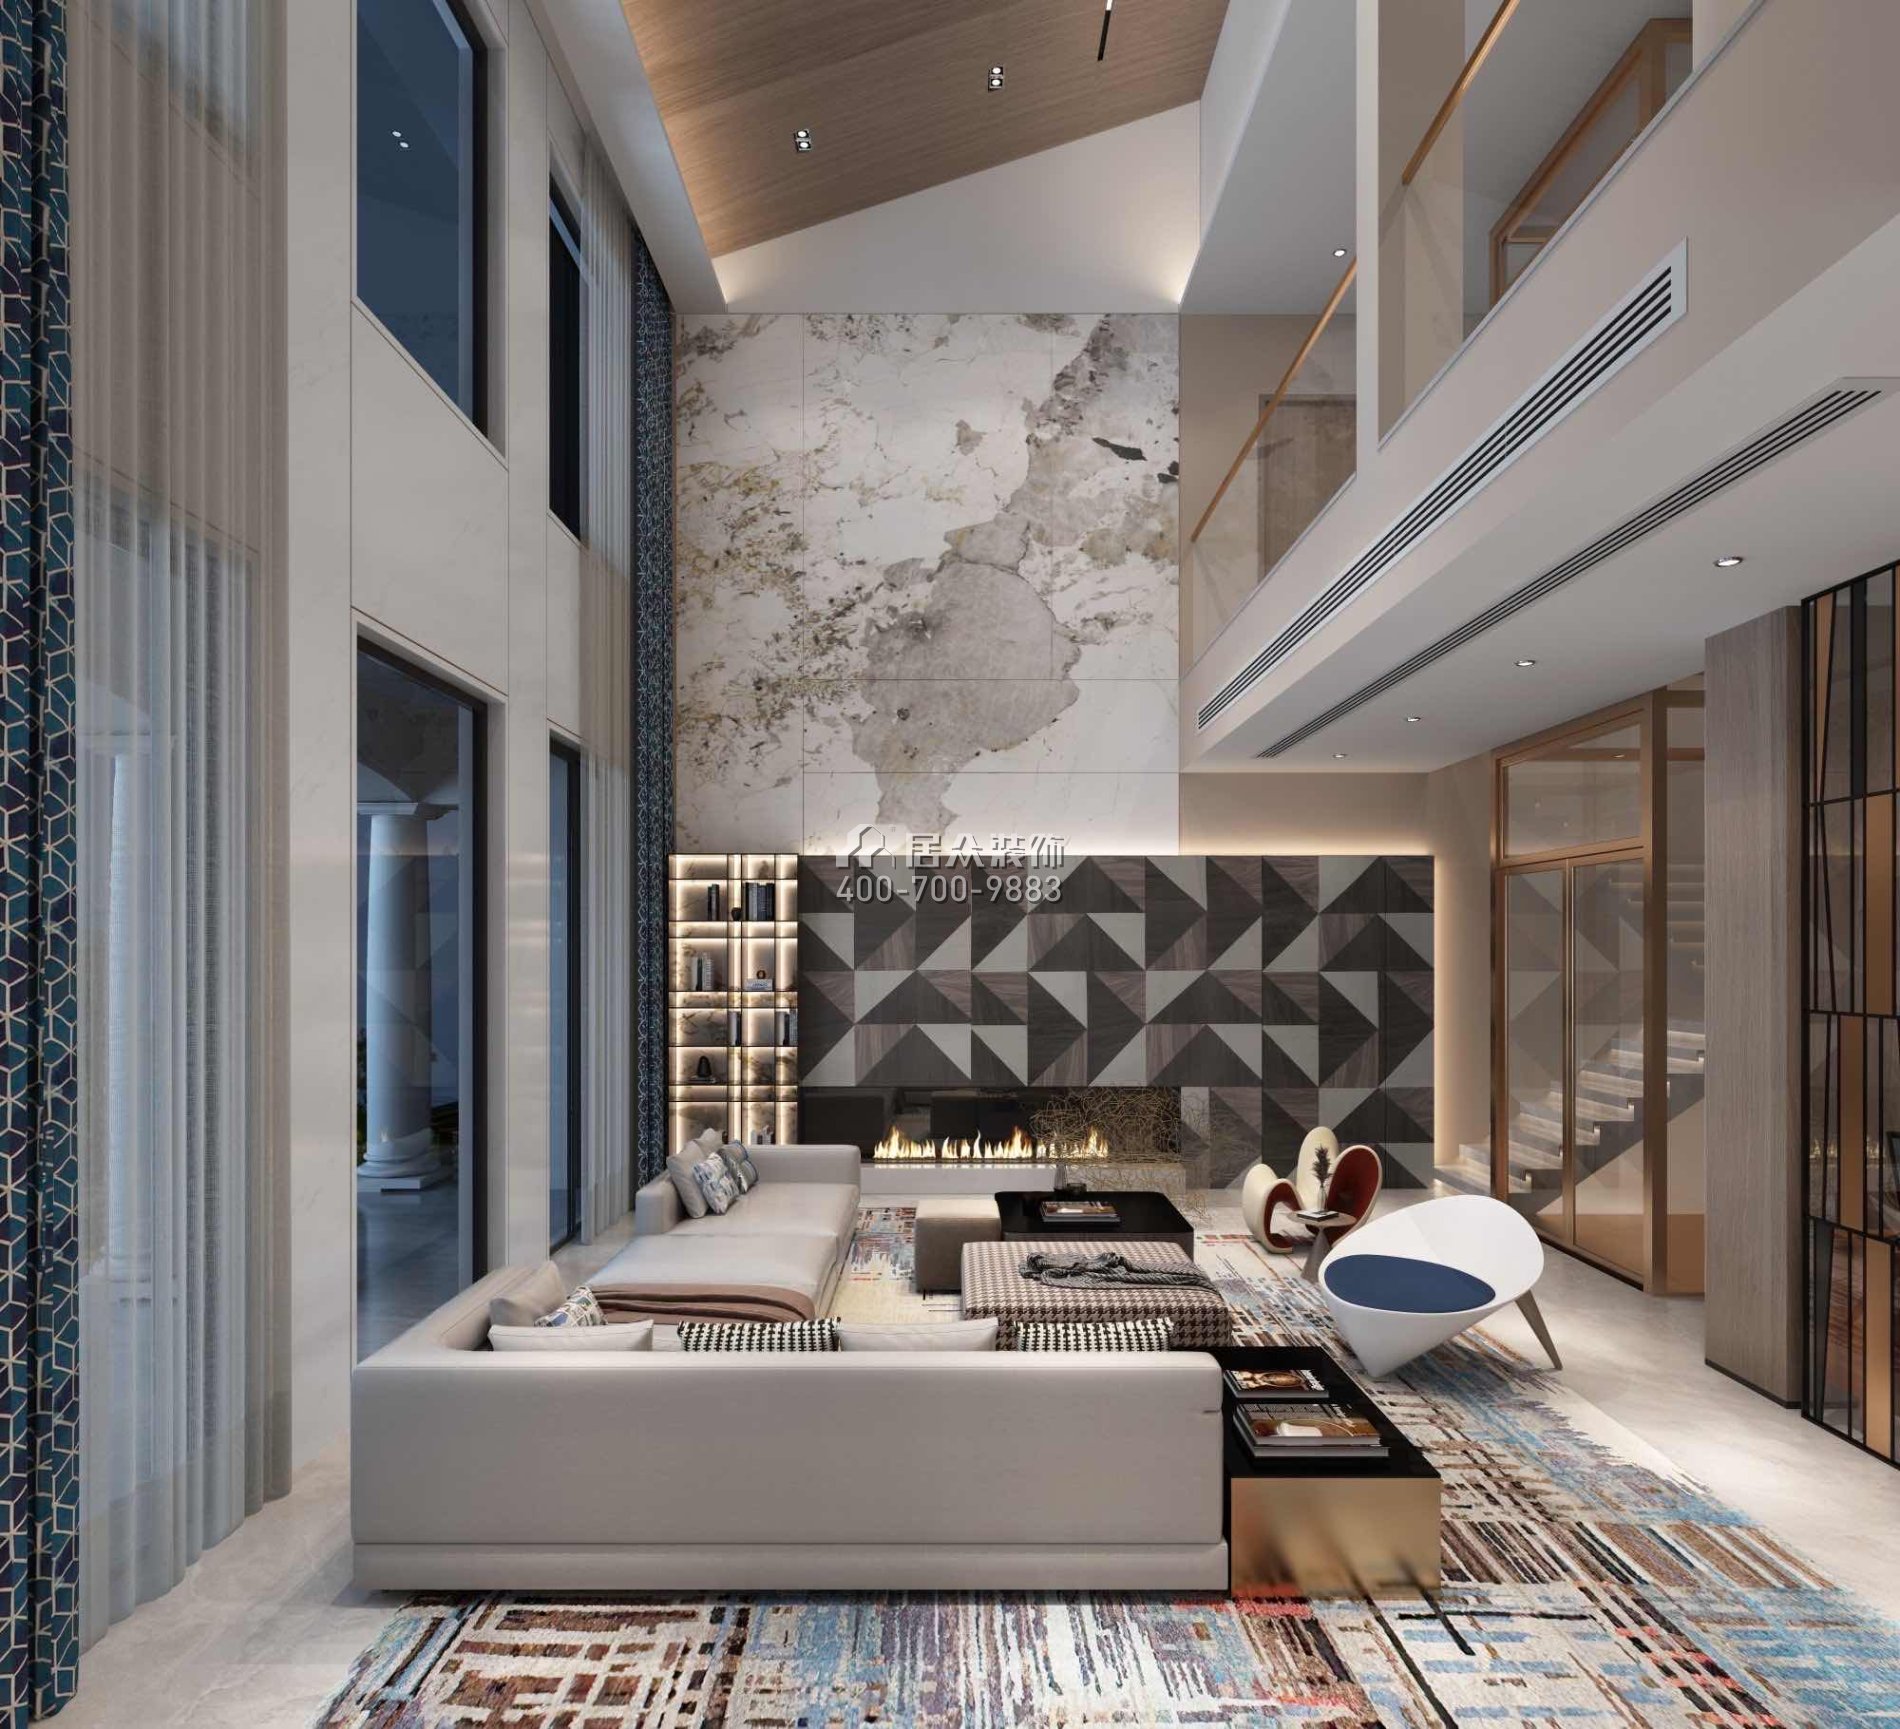 翠湖香山480平方米現代簡約風格別墅戶型客廳裝修效果圖